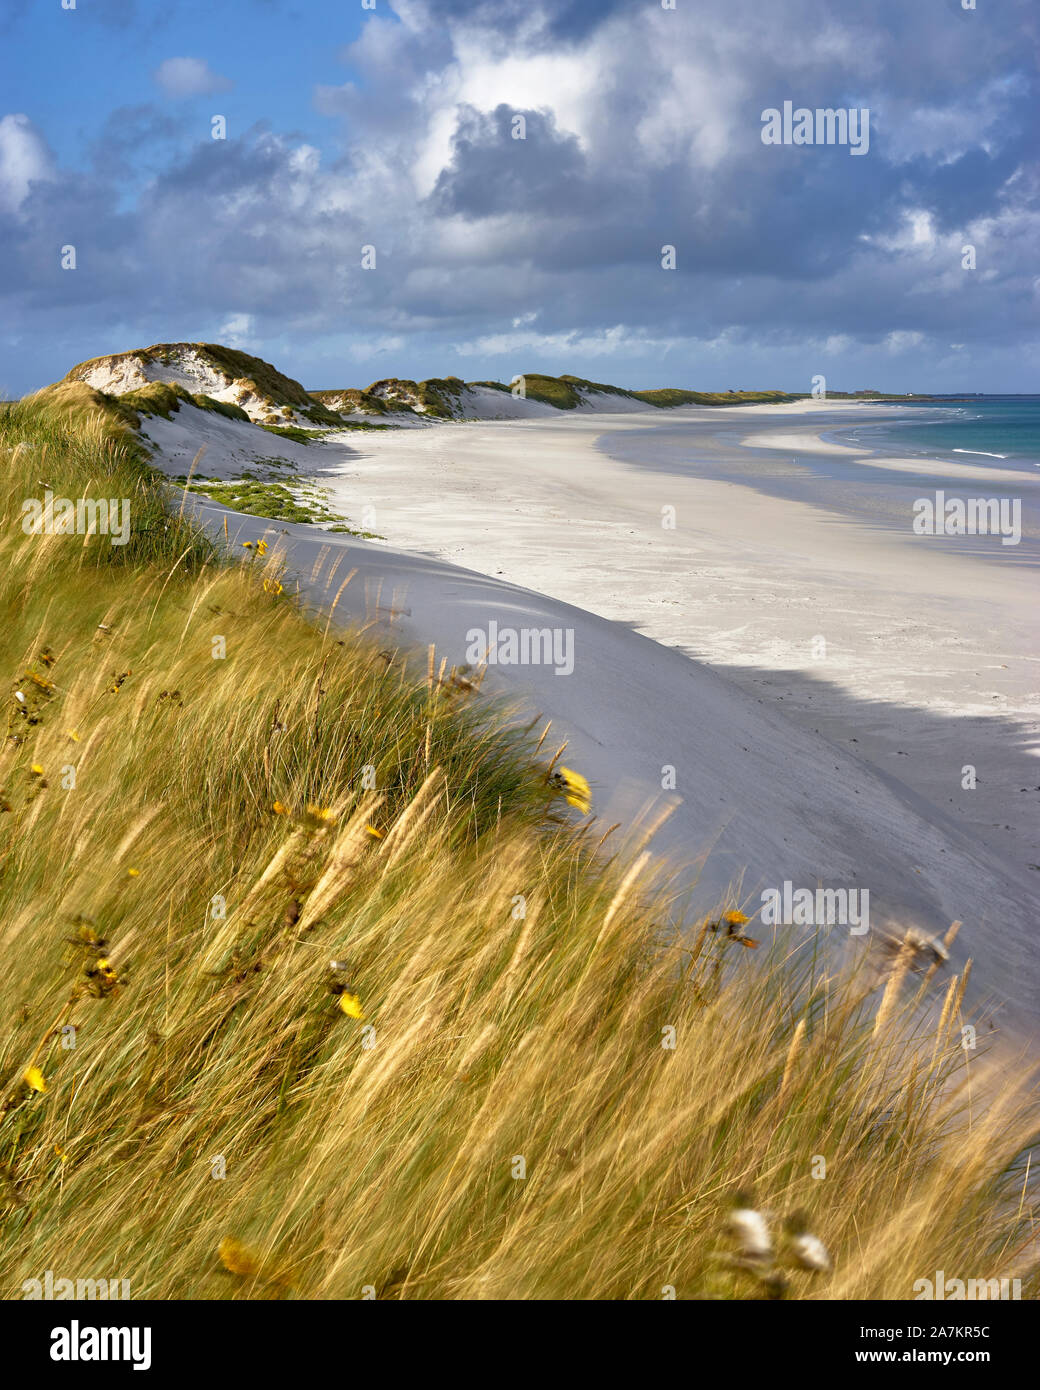 Marram erba e dune di sabbia, Tres Ness spiaggia nella baia di Newark, Sanday, isole Orcadi, Scozia Foto Stock